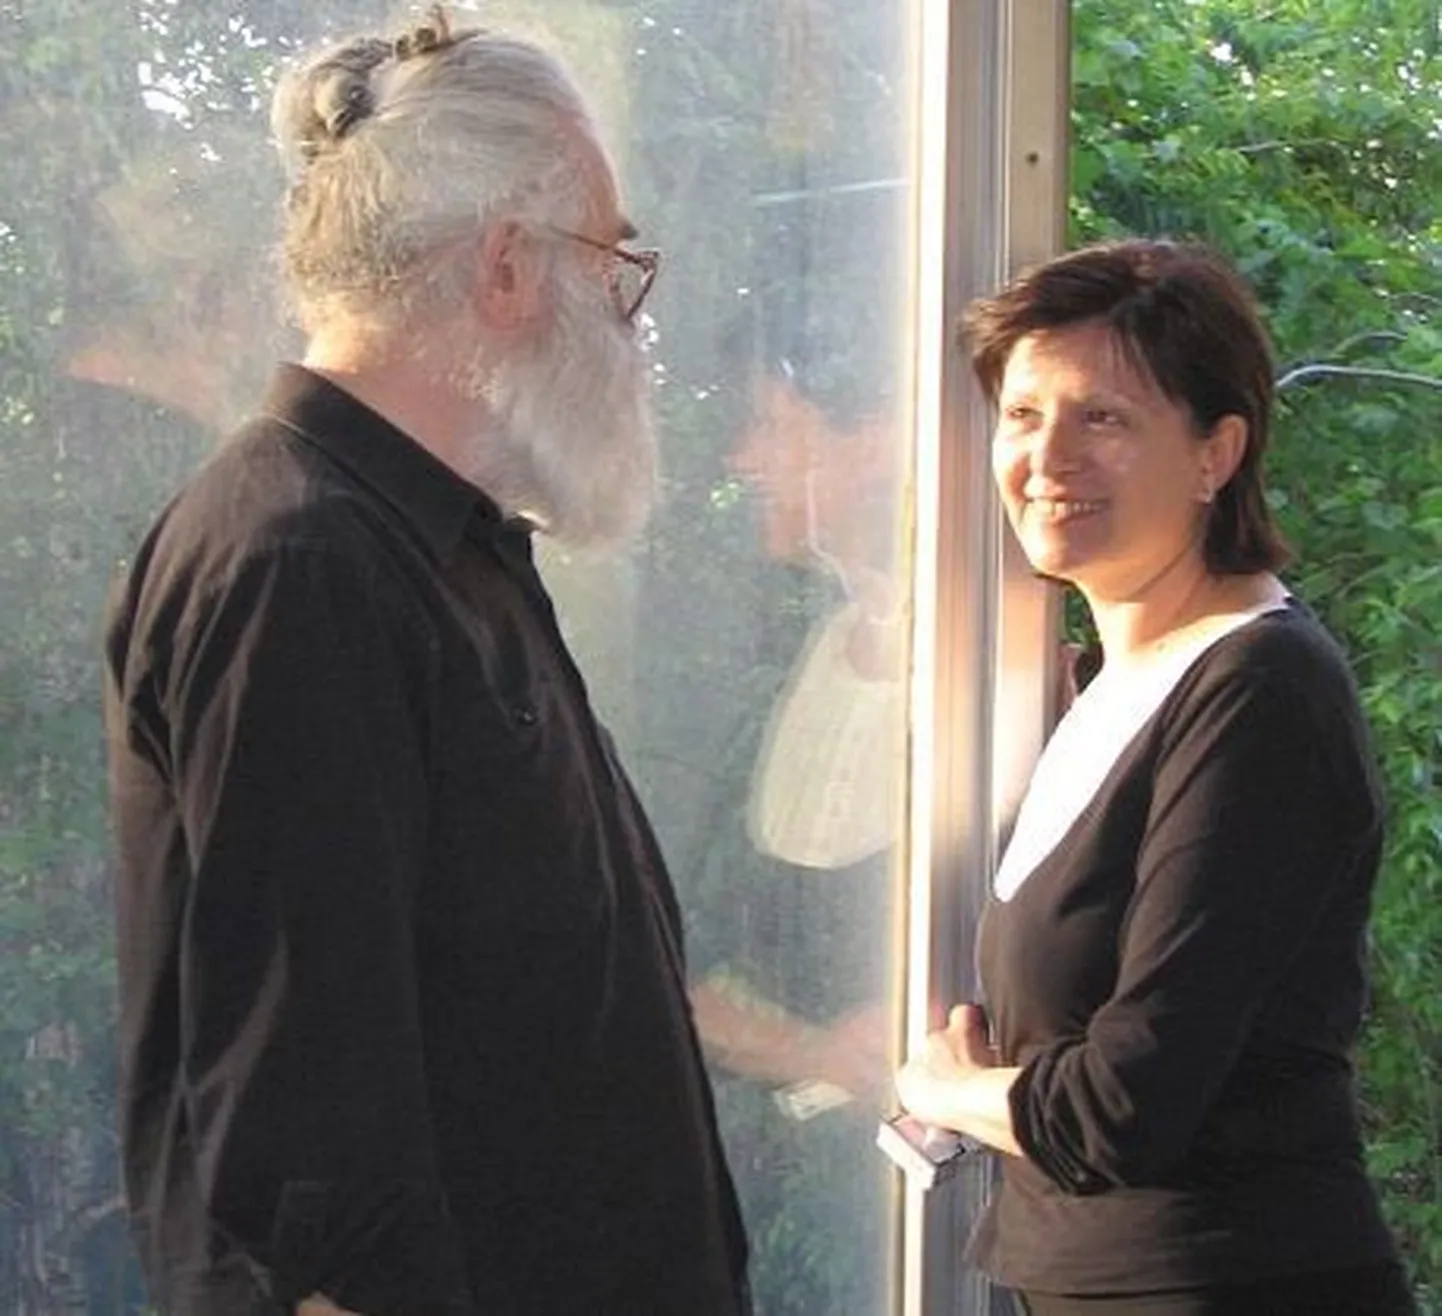 Radovan Karadžić koos Mila nimelise naisega